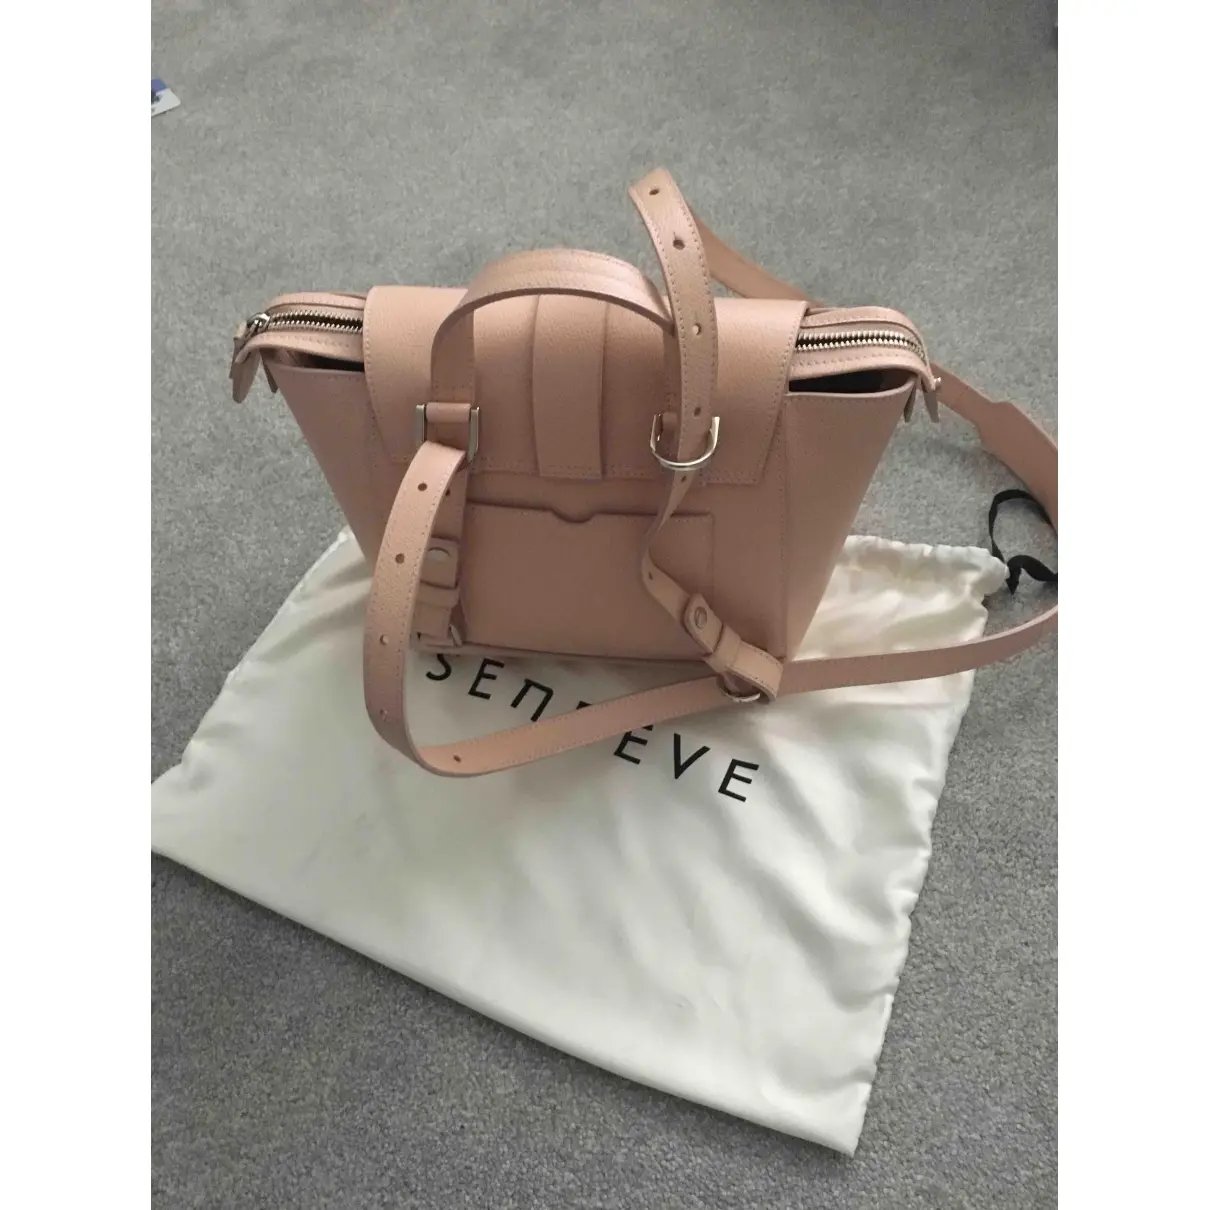 Senreve Leather bag for sale